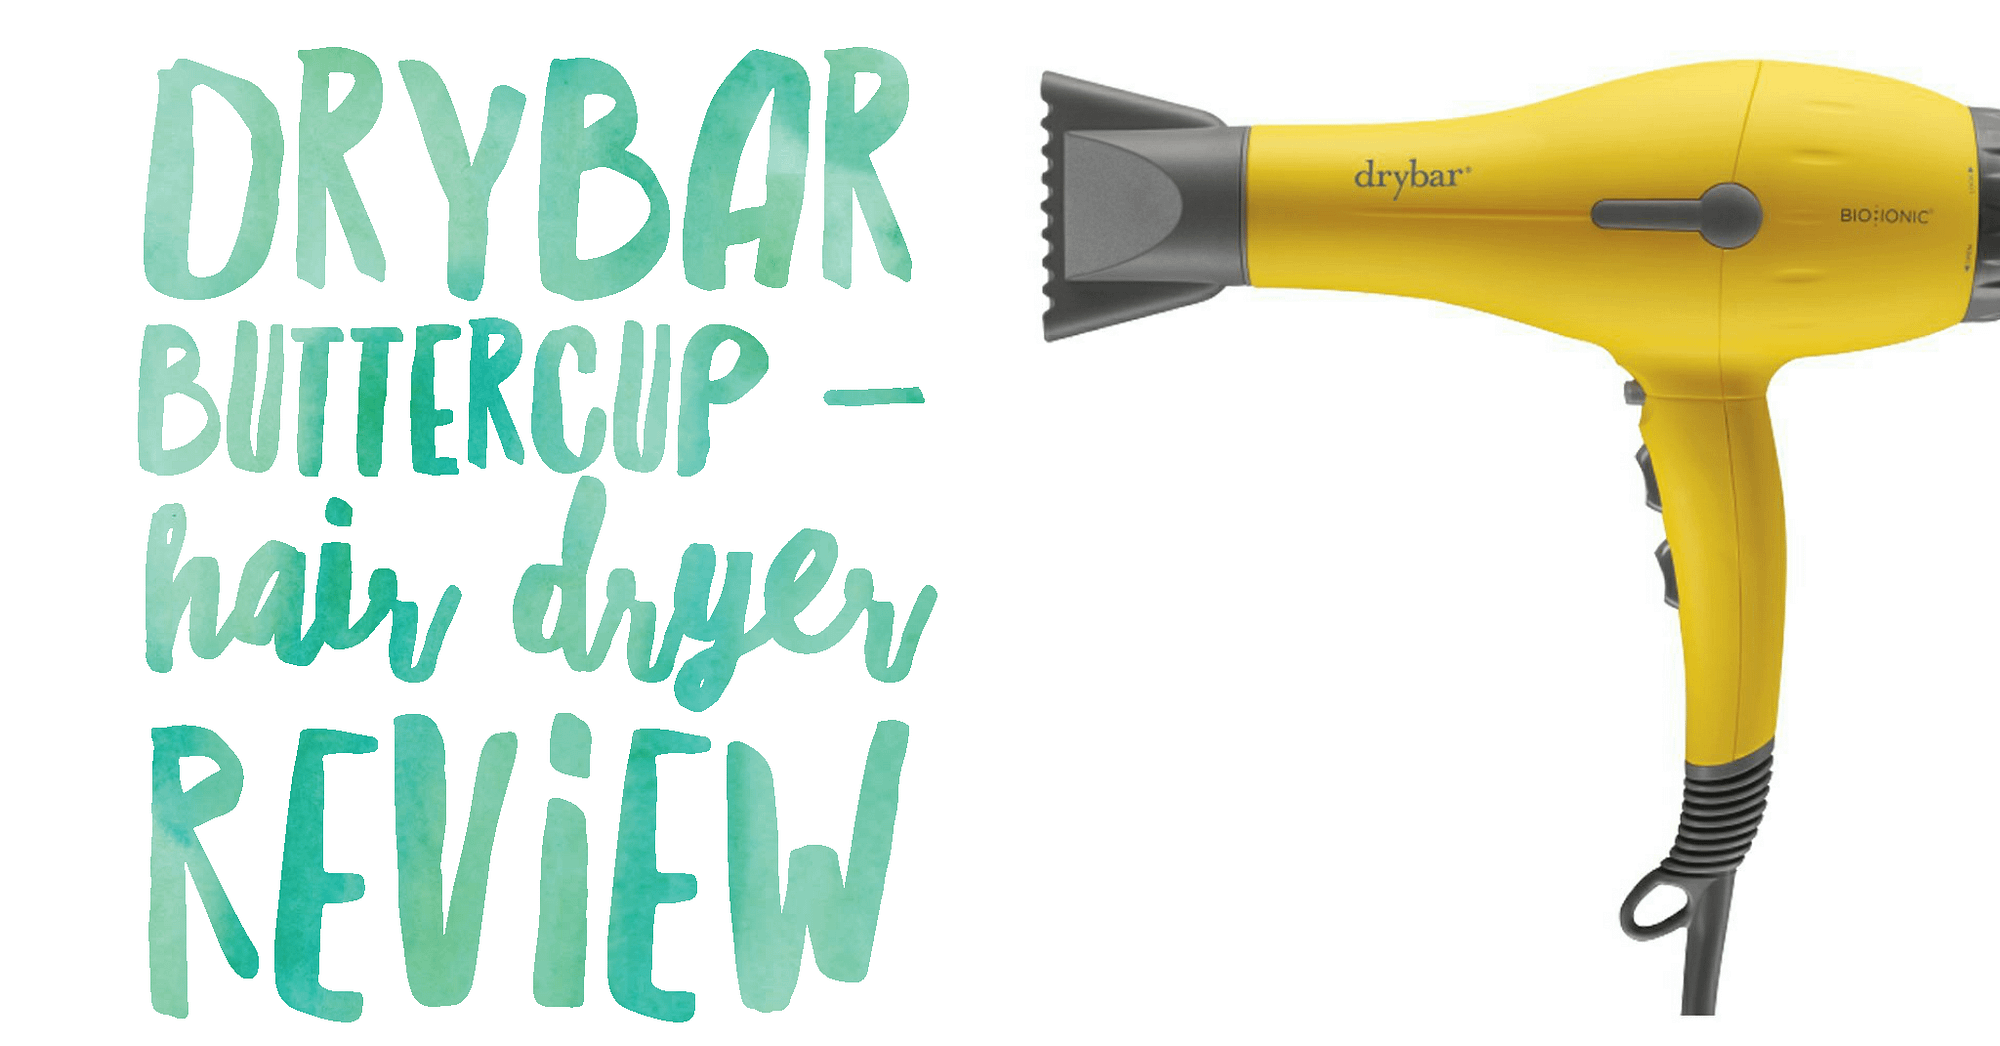 drybar buttercup dryer reviews